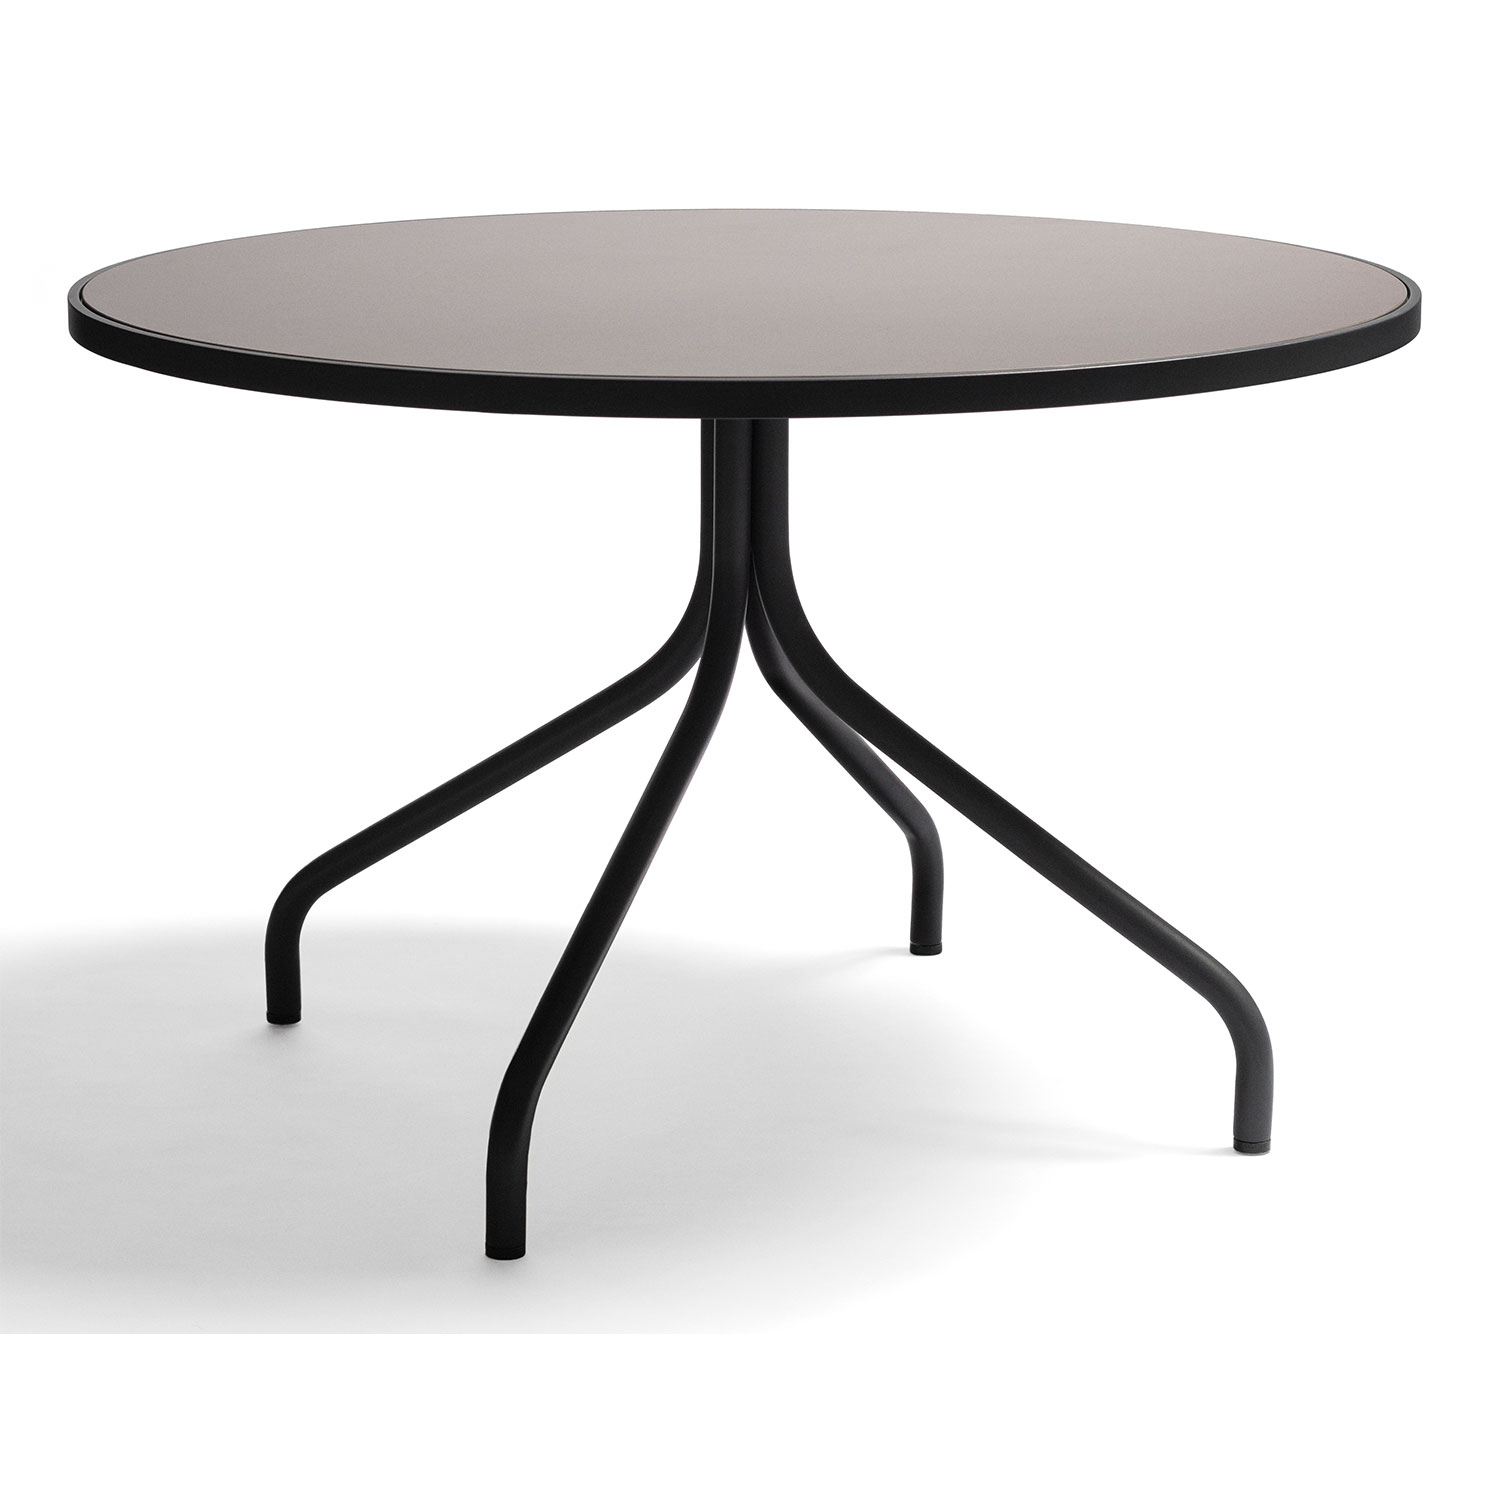 Arholma dining table round 120cm dark grey